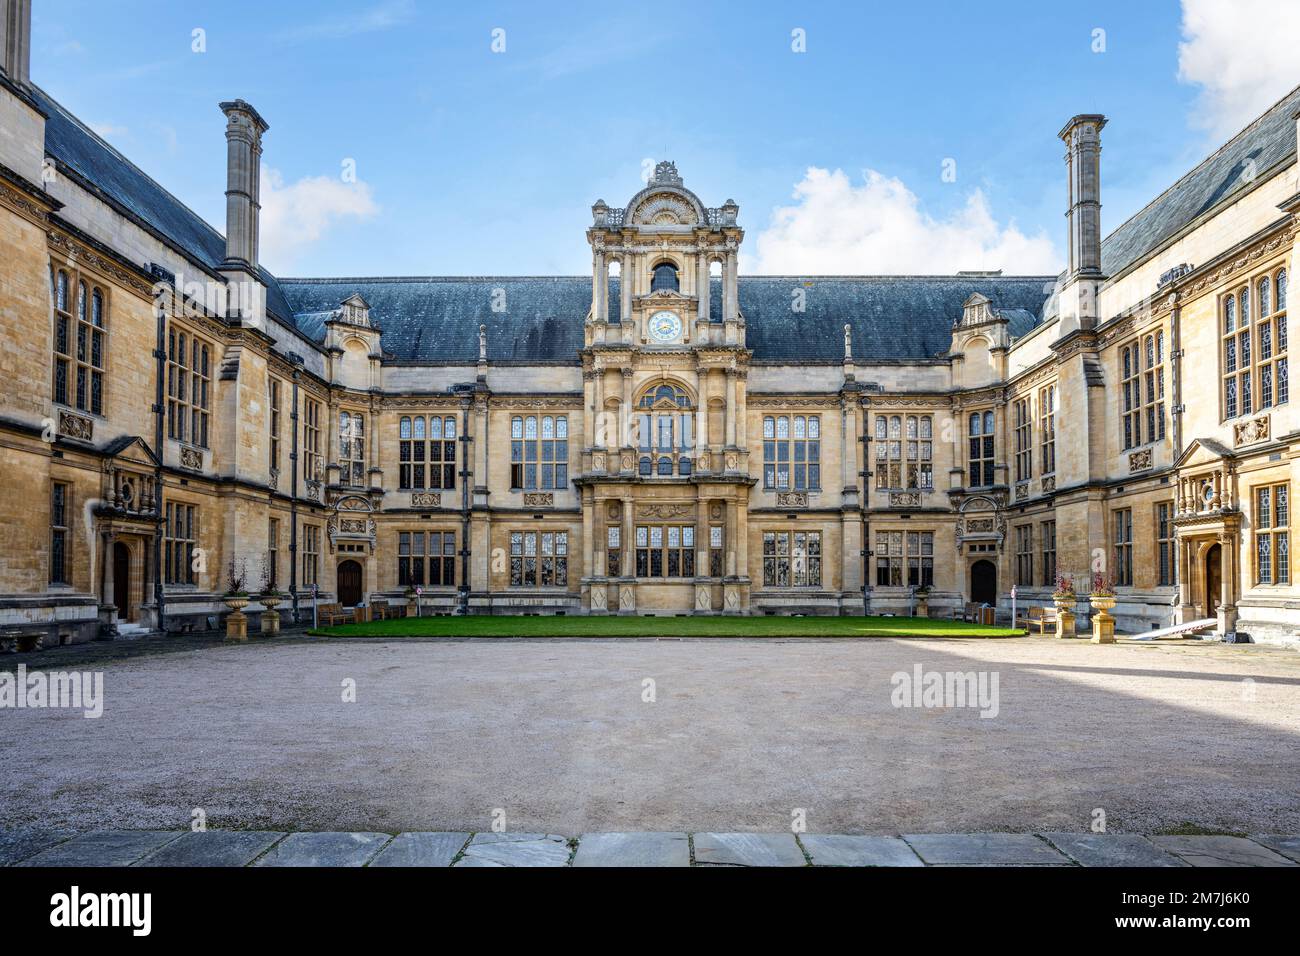 La devise de l'université d'Oxford, dominus illuminatio, a été sculptée sous l'horloge sur l'extérieur du quadrilatère des écoles d'examen Banque D'Images